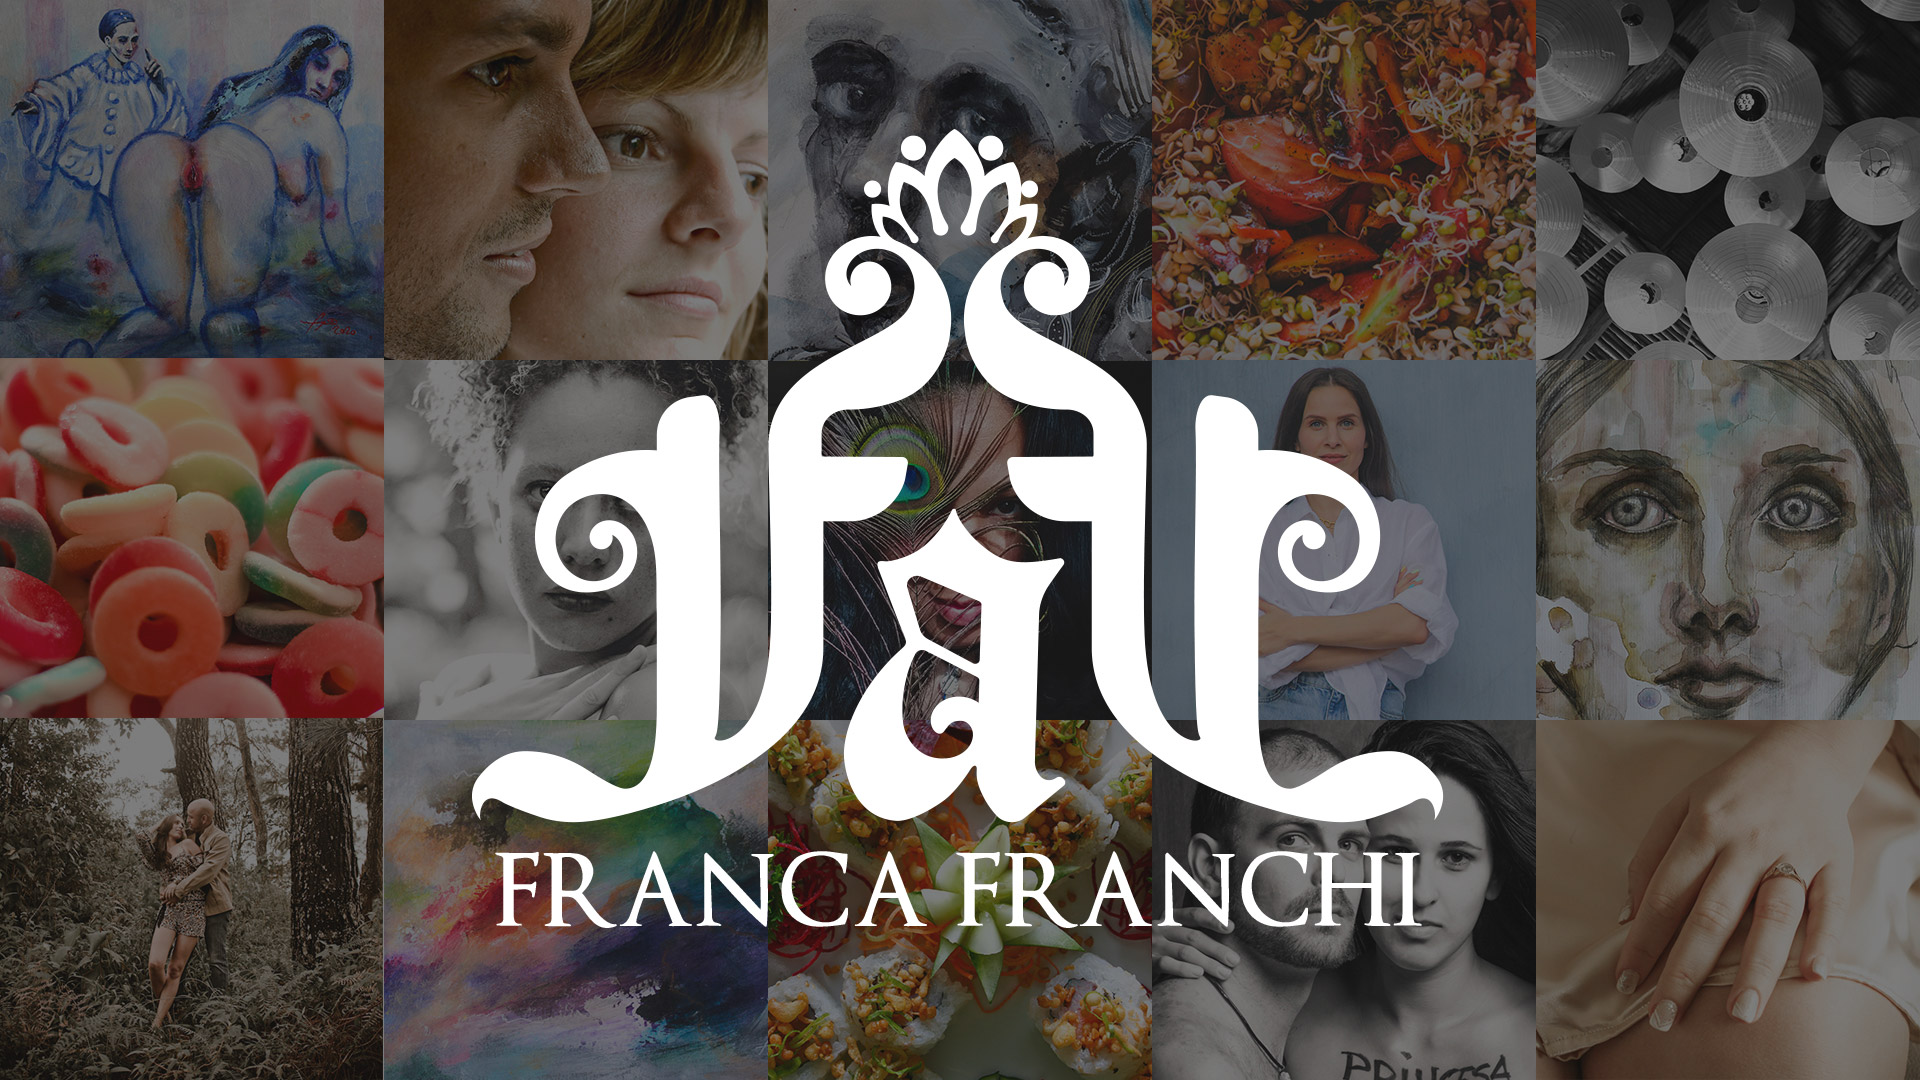 (c) Francafranchi.com